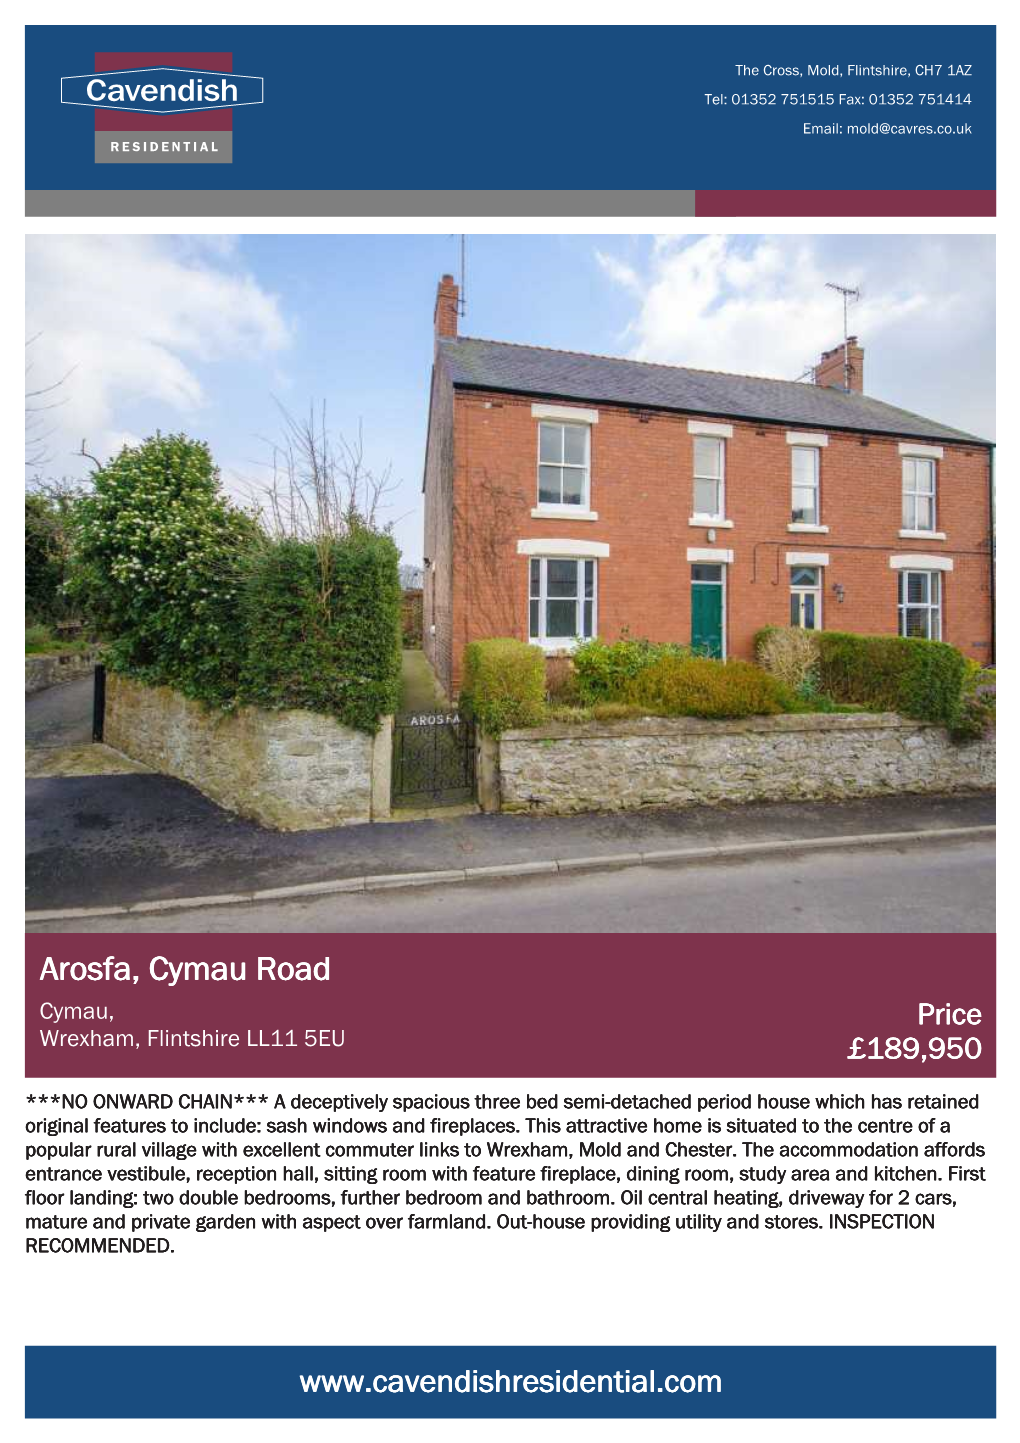 Arosfa, Cymau Road Cymau, Price Wrexham, Flintshire LL11 5EU £189,950